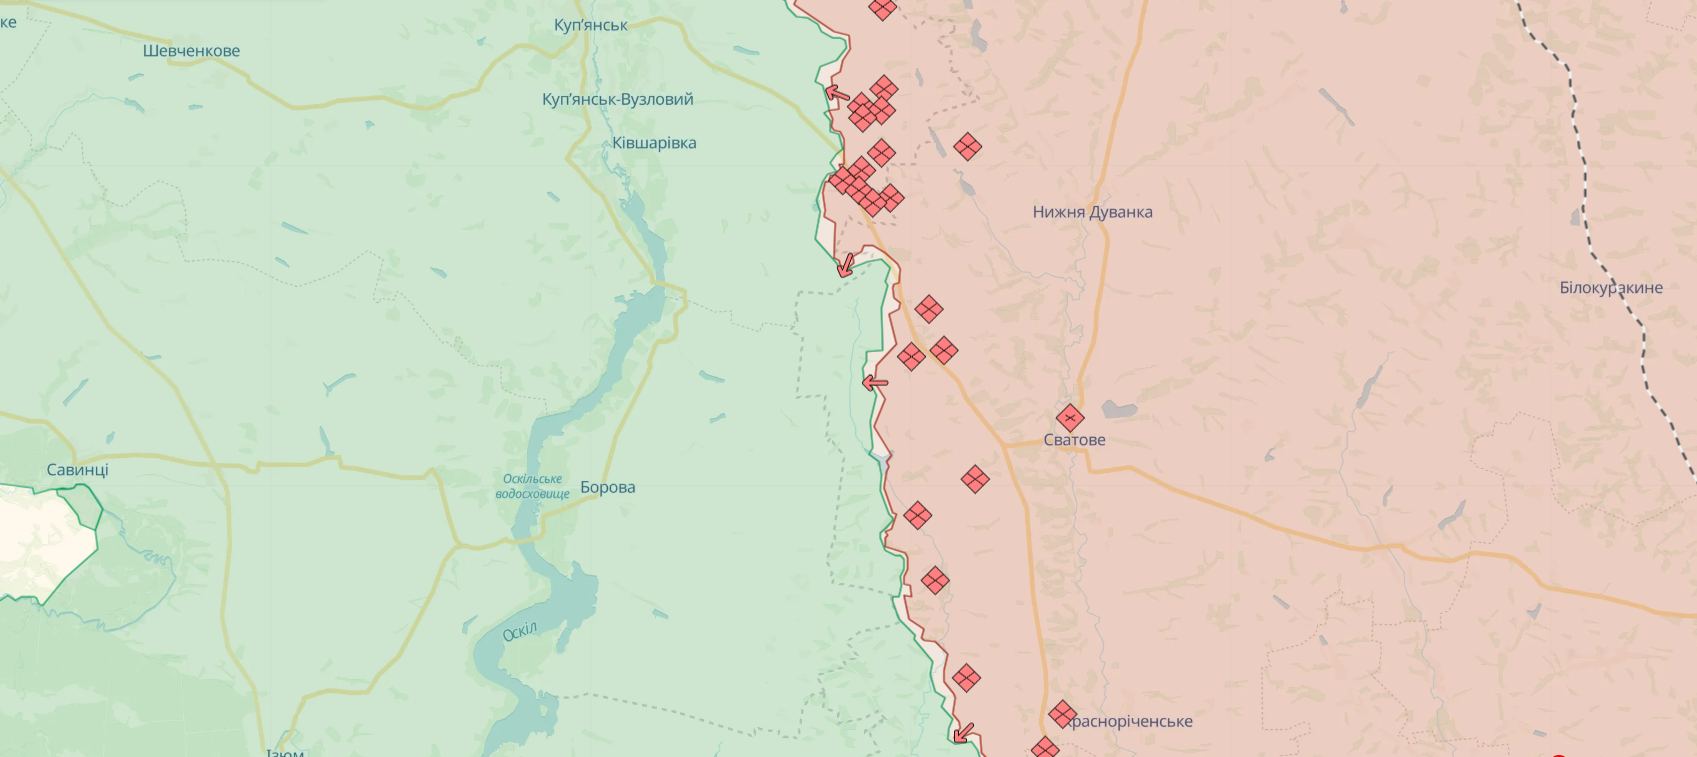 ВСУ отразили вражеские атаки в районах Волчанска и Липцев, на Купянском направлении продолжаются бои – Генштаб